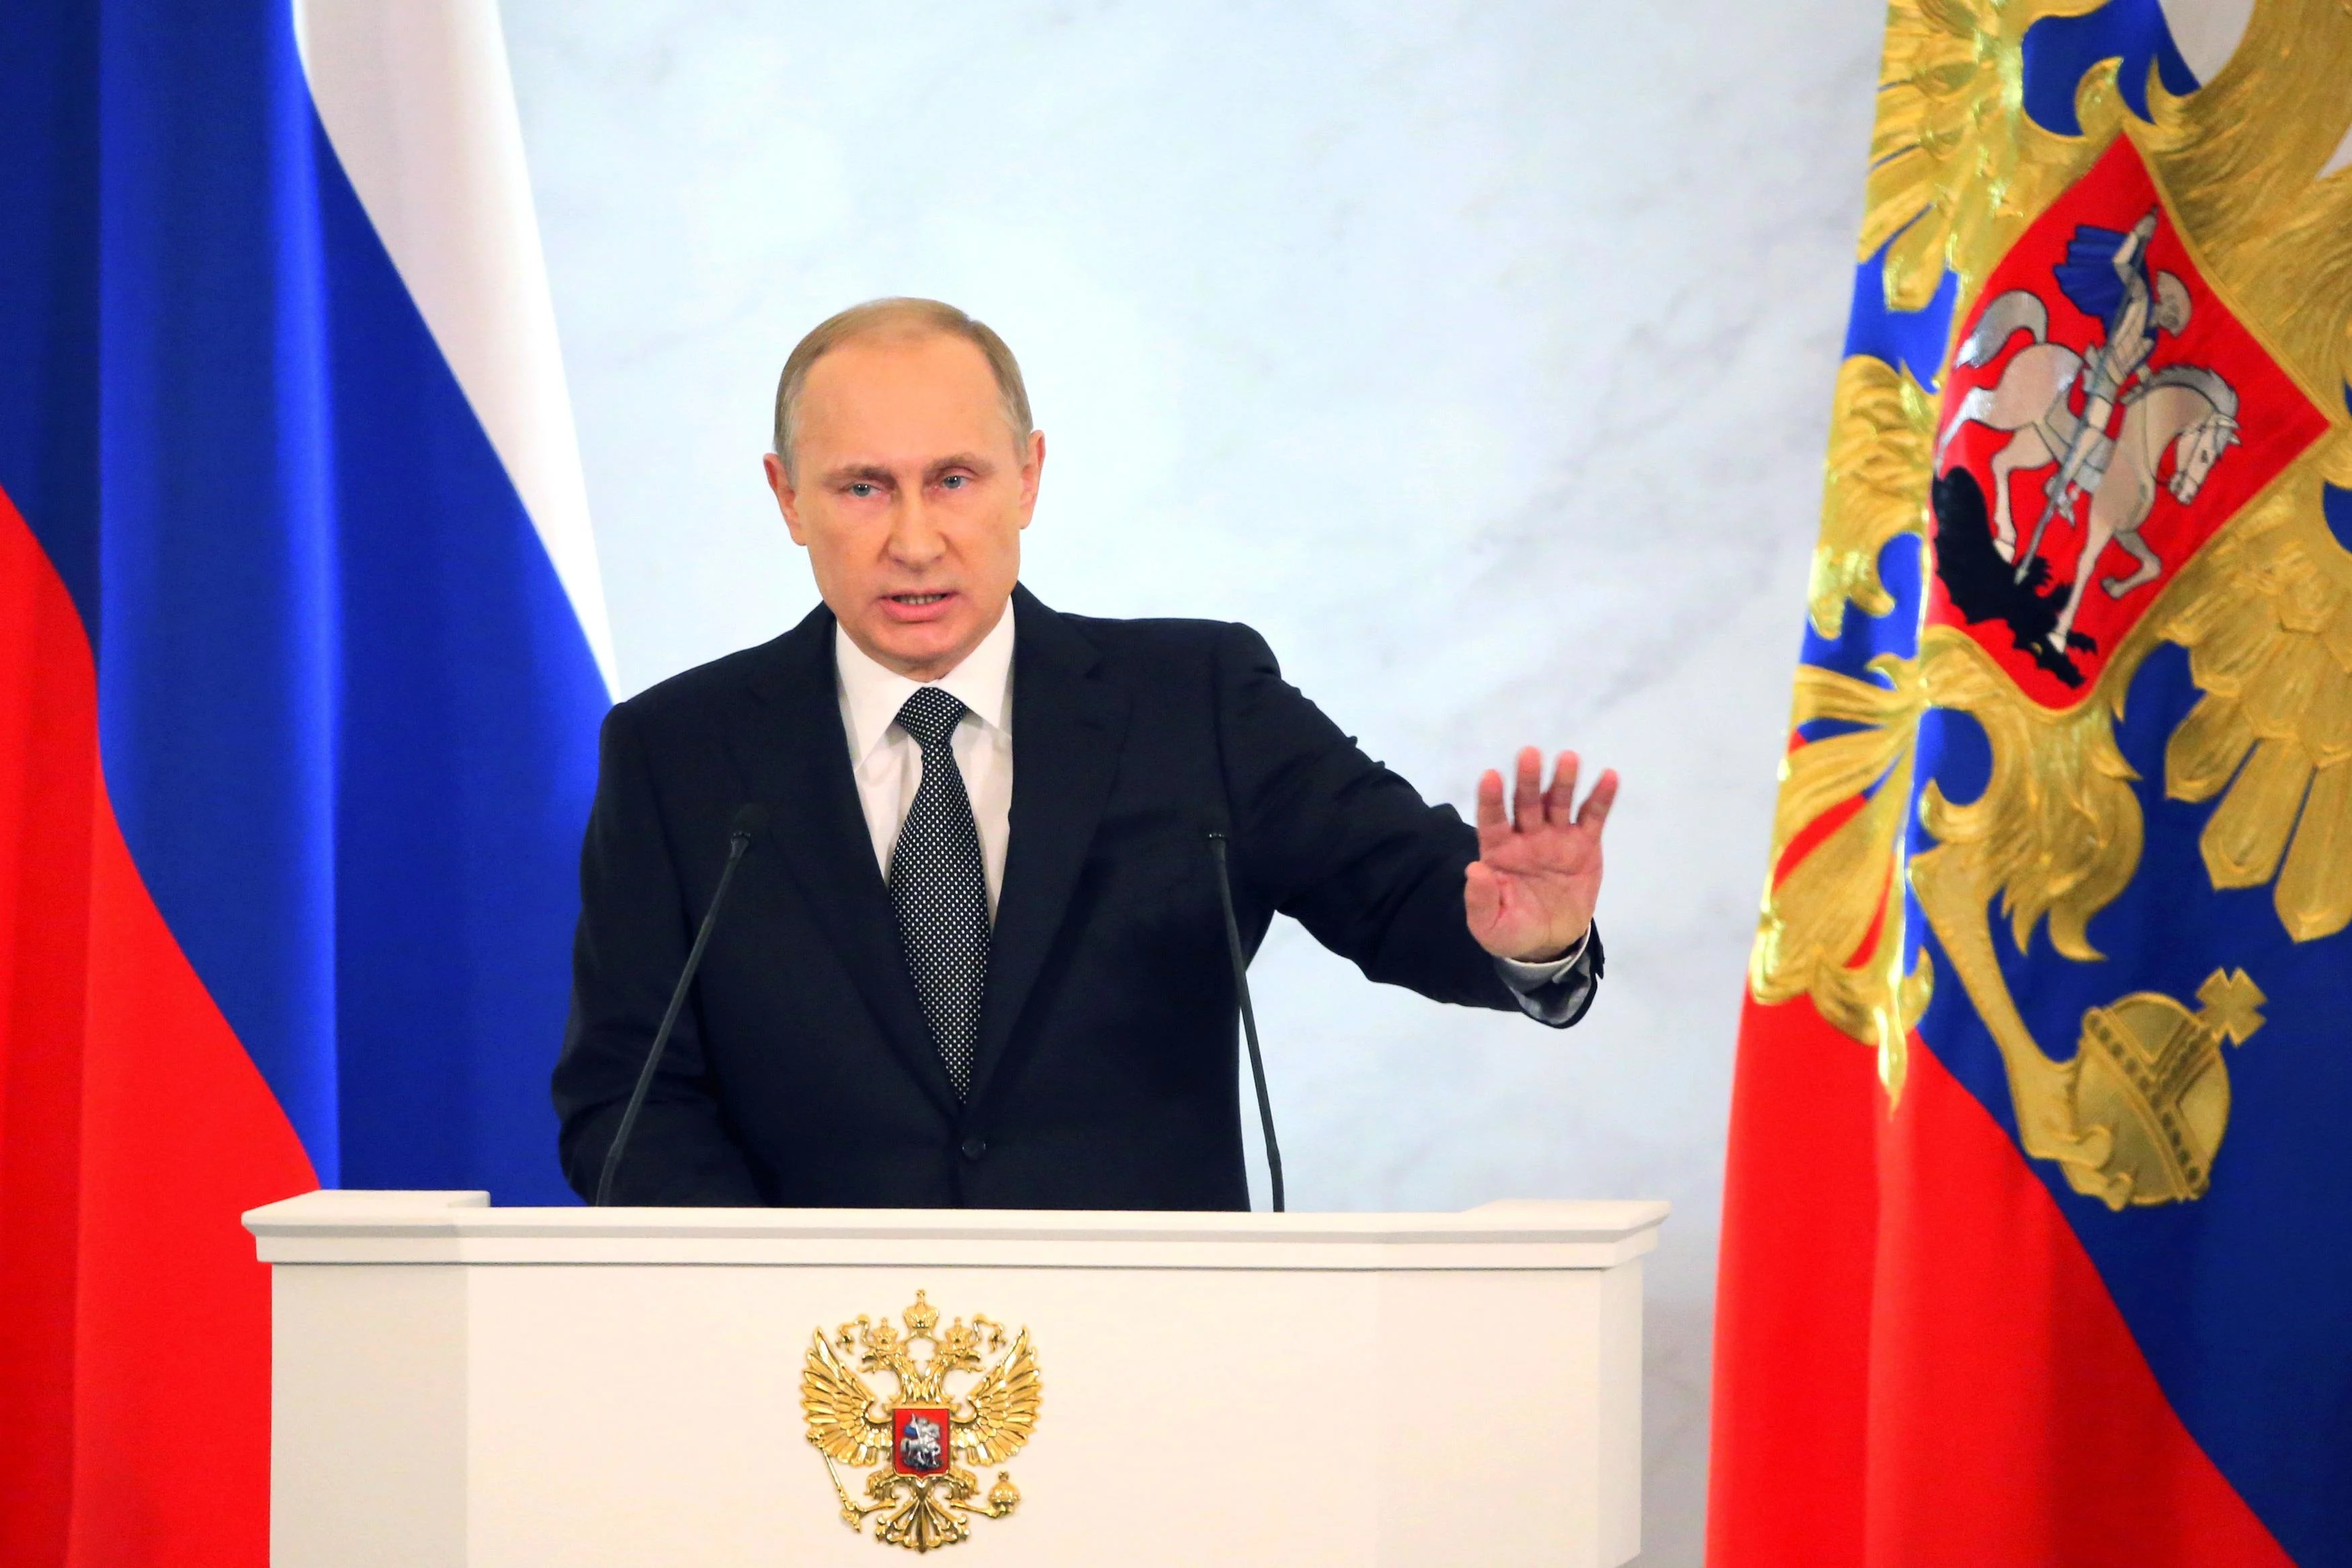 נשיא רוסיה, ולדימיר פוטין: "לצד חילוקי הדעות, יש הסכמות"